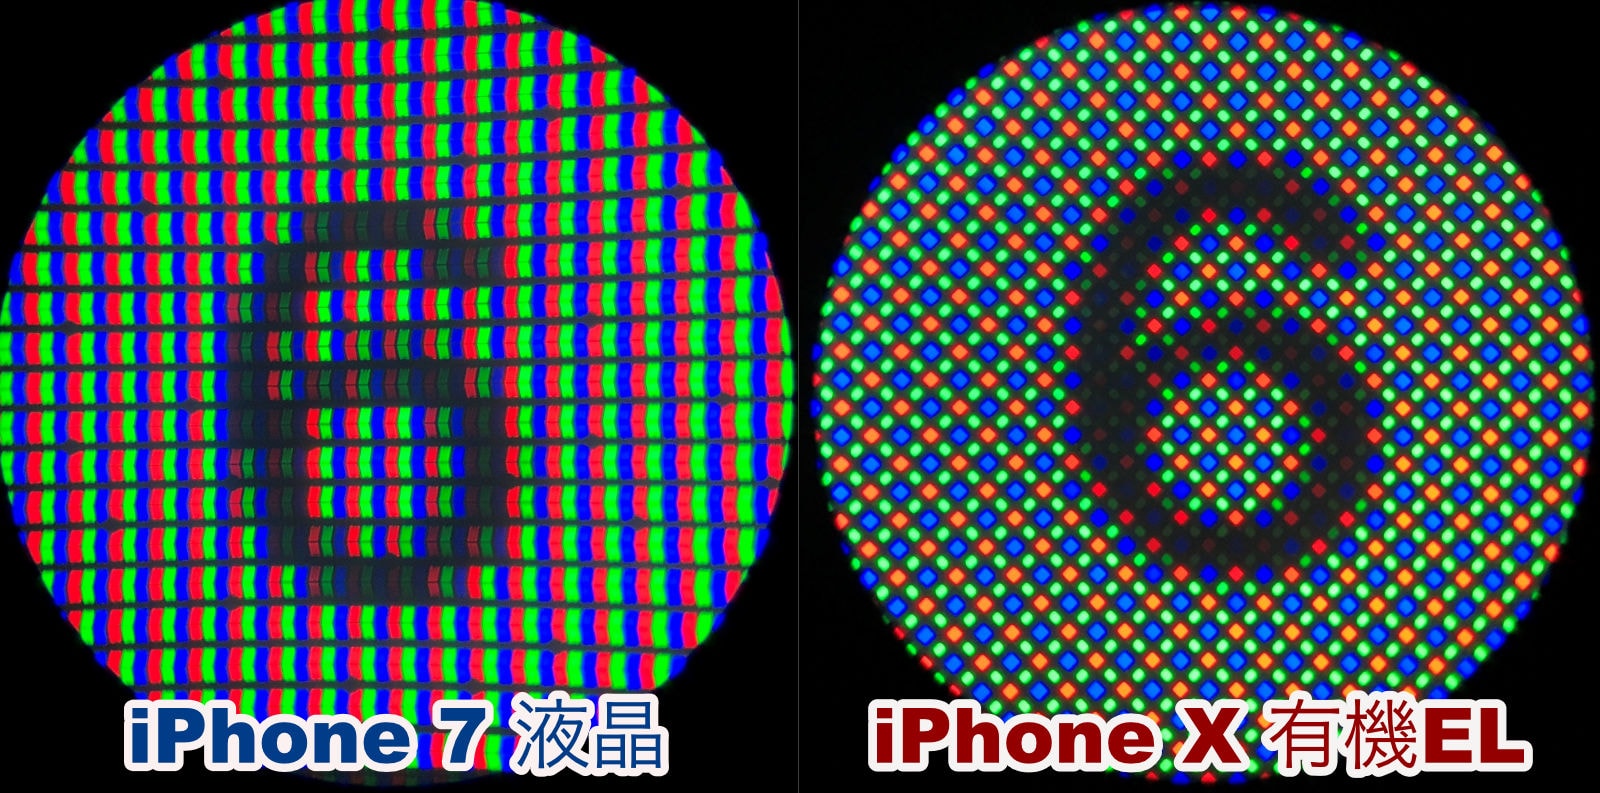 Iphone X の有機elと Iphone 7 の液晶 顕微鏡で見ると違いが一目瞭然 Ipod Love